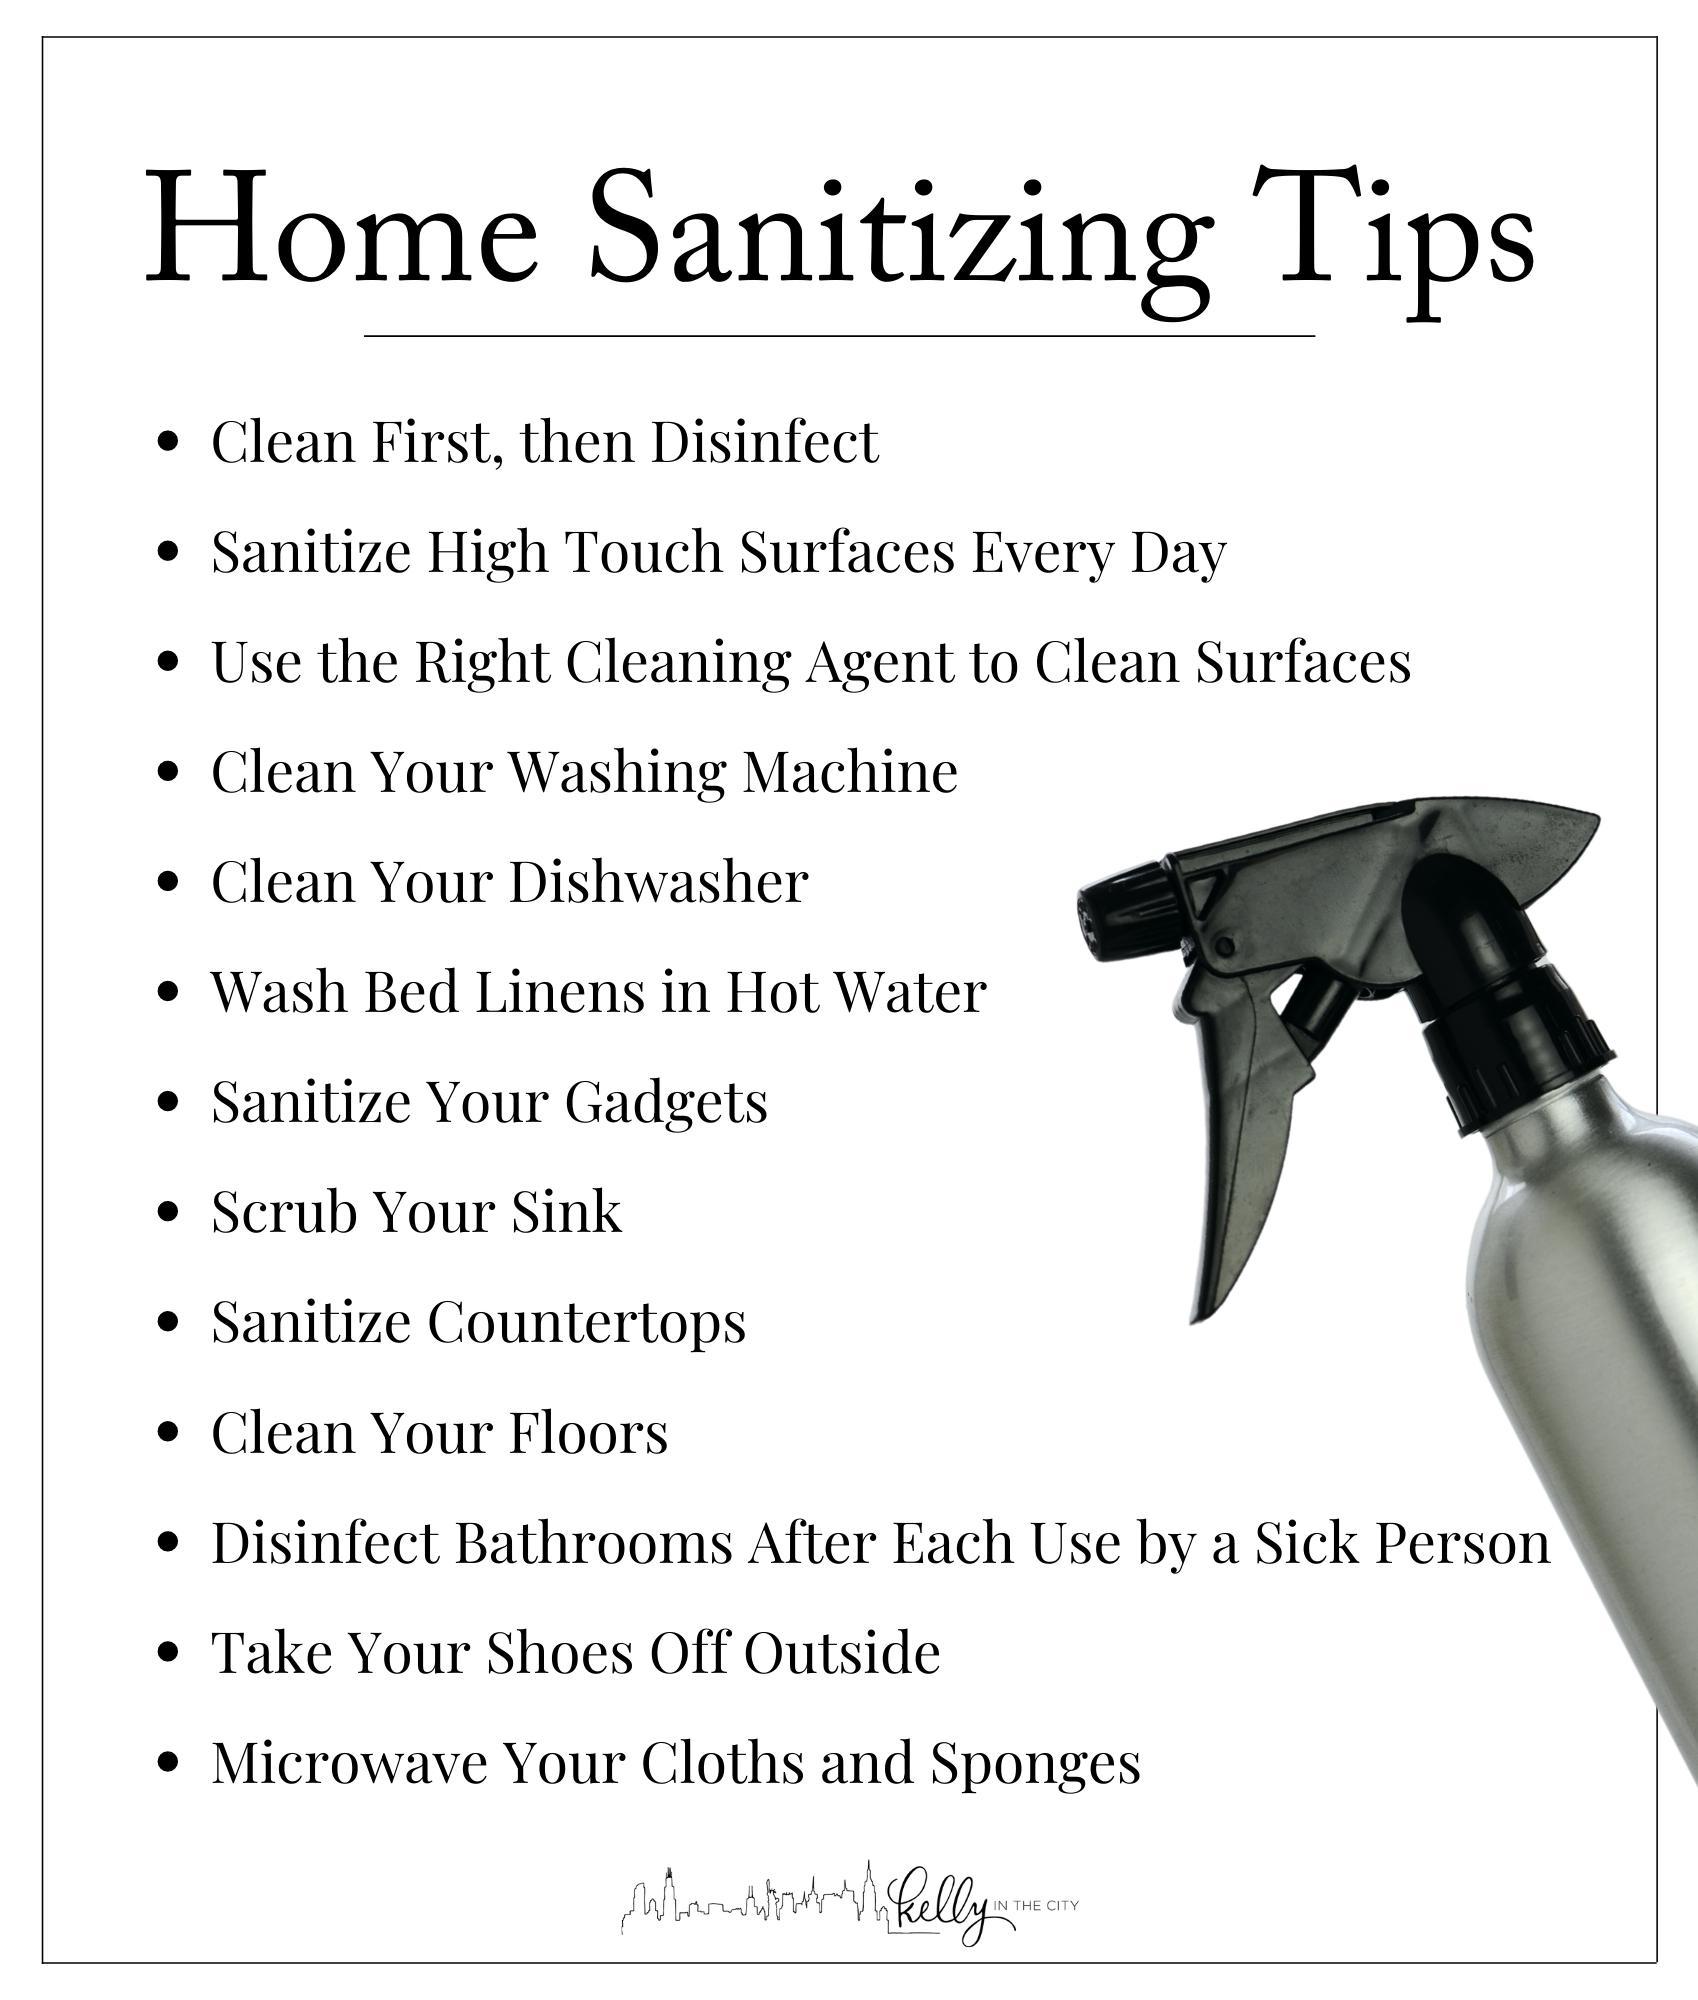 Steps for Home Sanitizing Tips